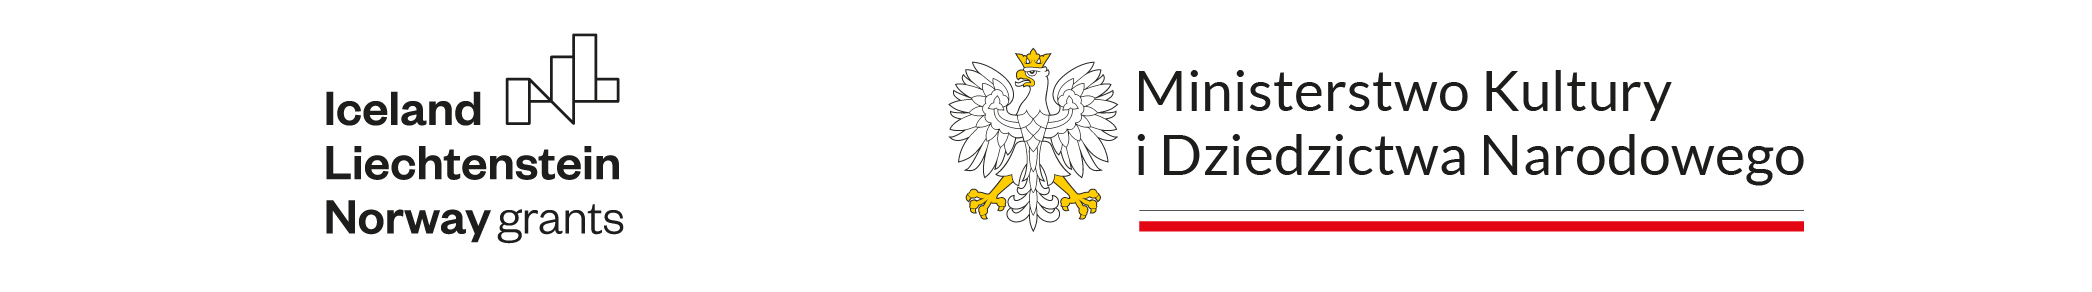 Logo Wielokulturowa Rzeczpospolita – Zamek Pieskowa Skała